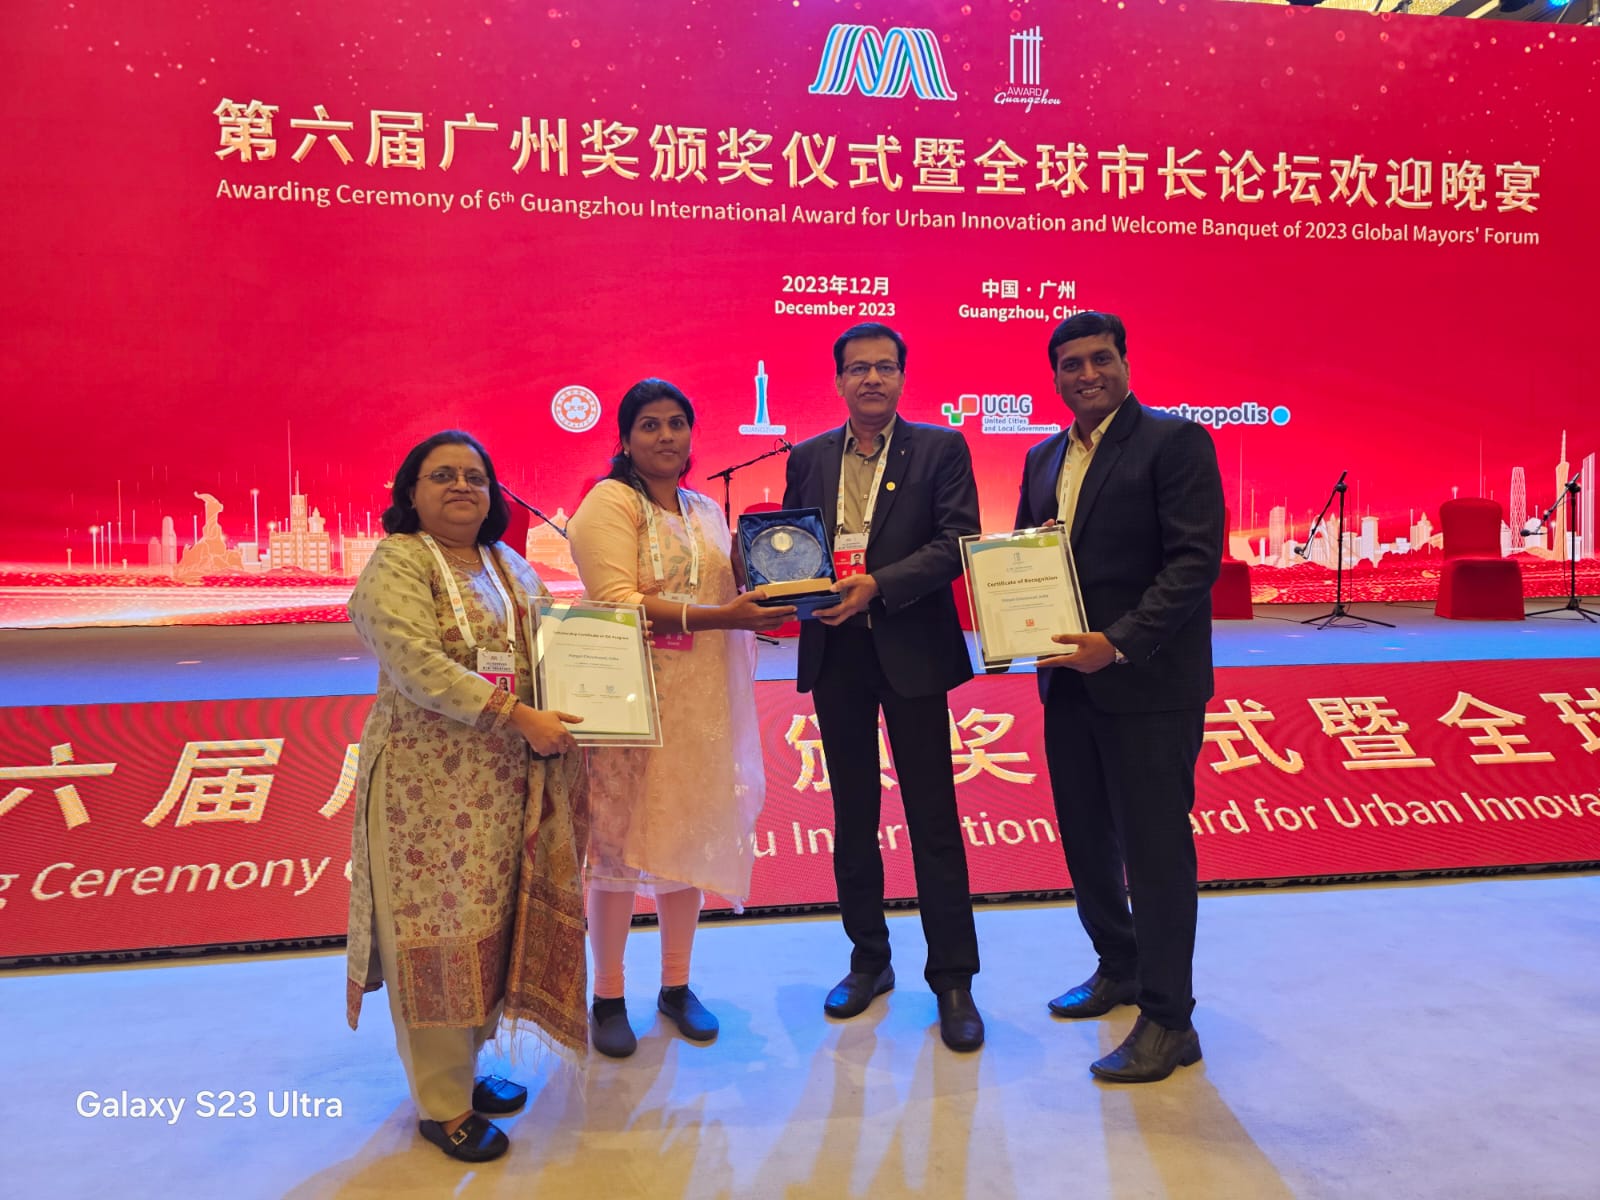 दिशा उपक्रमात पिंपरी चिंचवड महापालिकेचा डंका; ग्वांगझू आंतरराष्ट्रीय पुरस्कार स्पर्धेमध्ये शहराचा सन्मान पदकाने गौरव